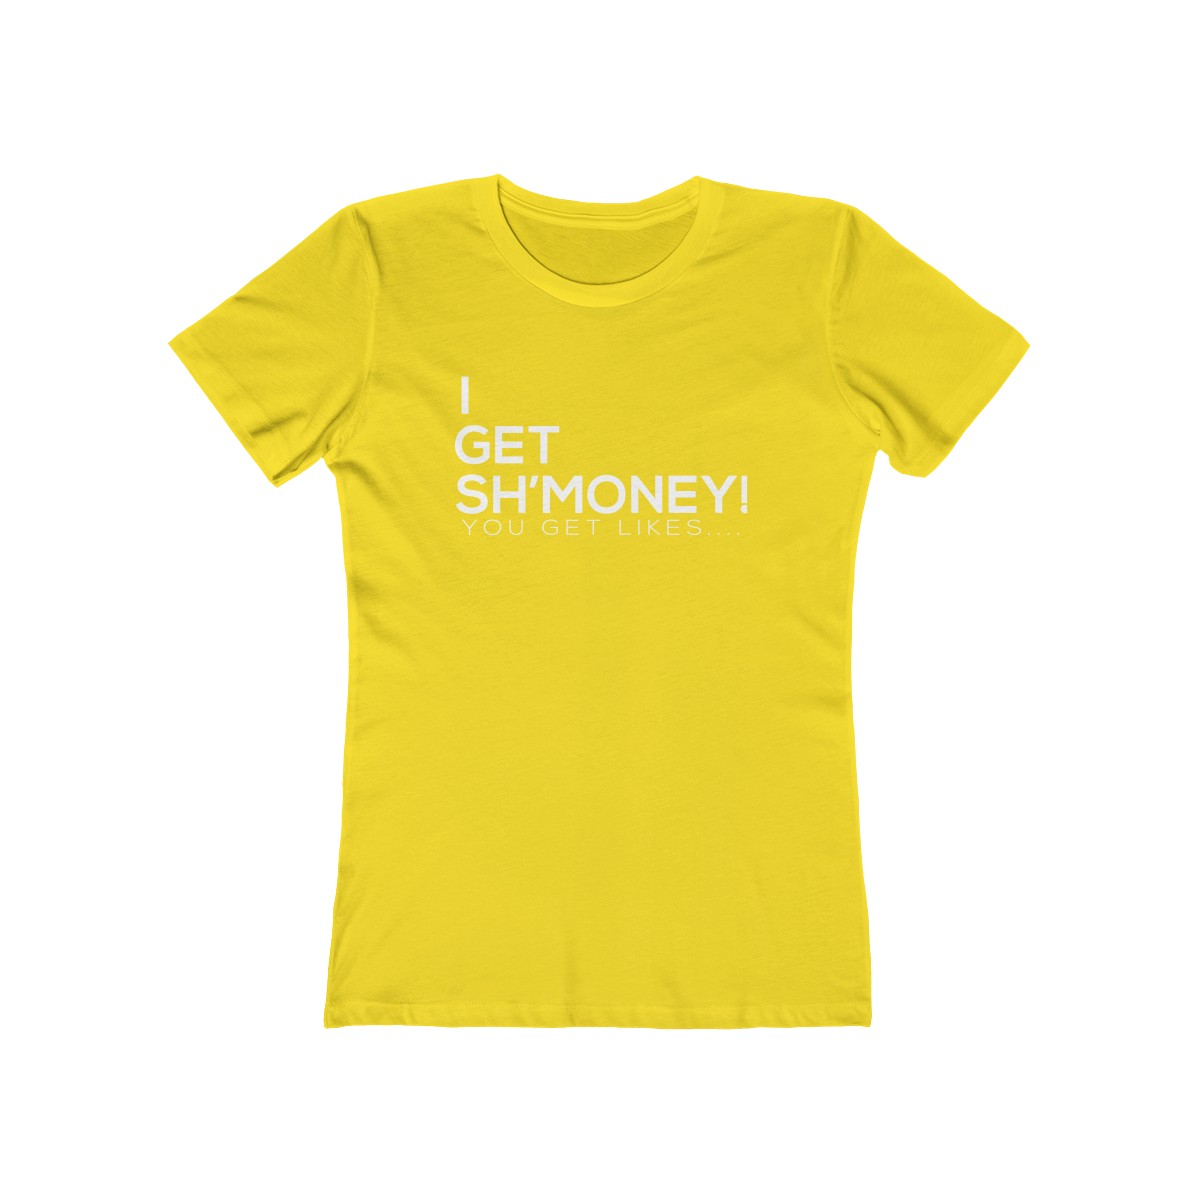 Get Sh’Money Tee! – Purse Empowerment